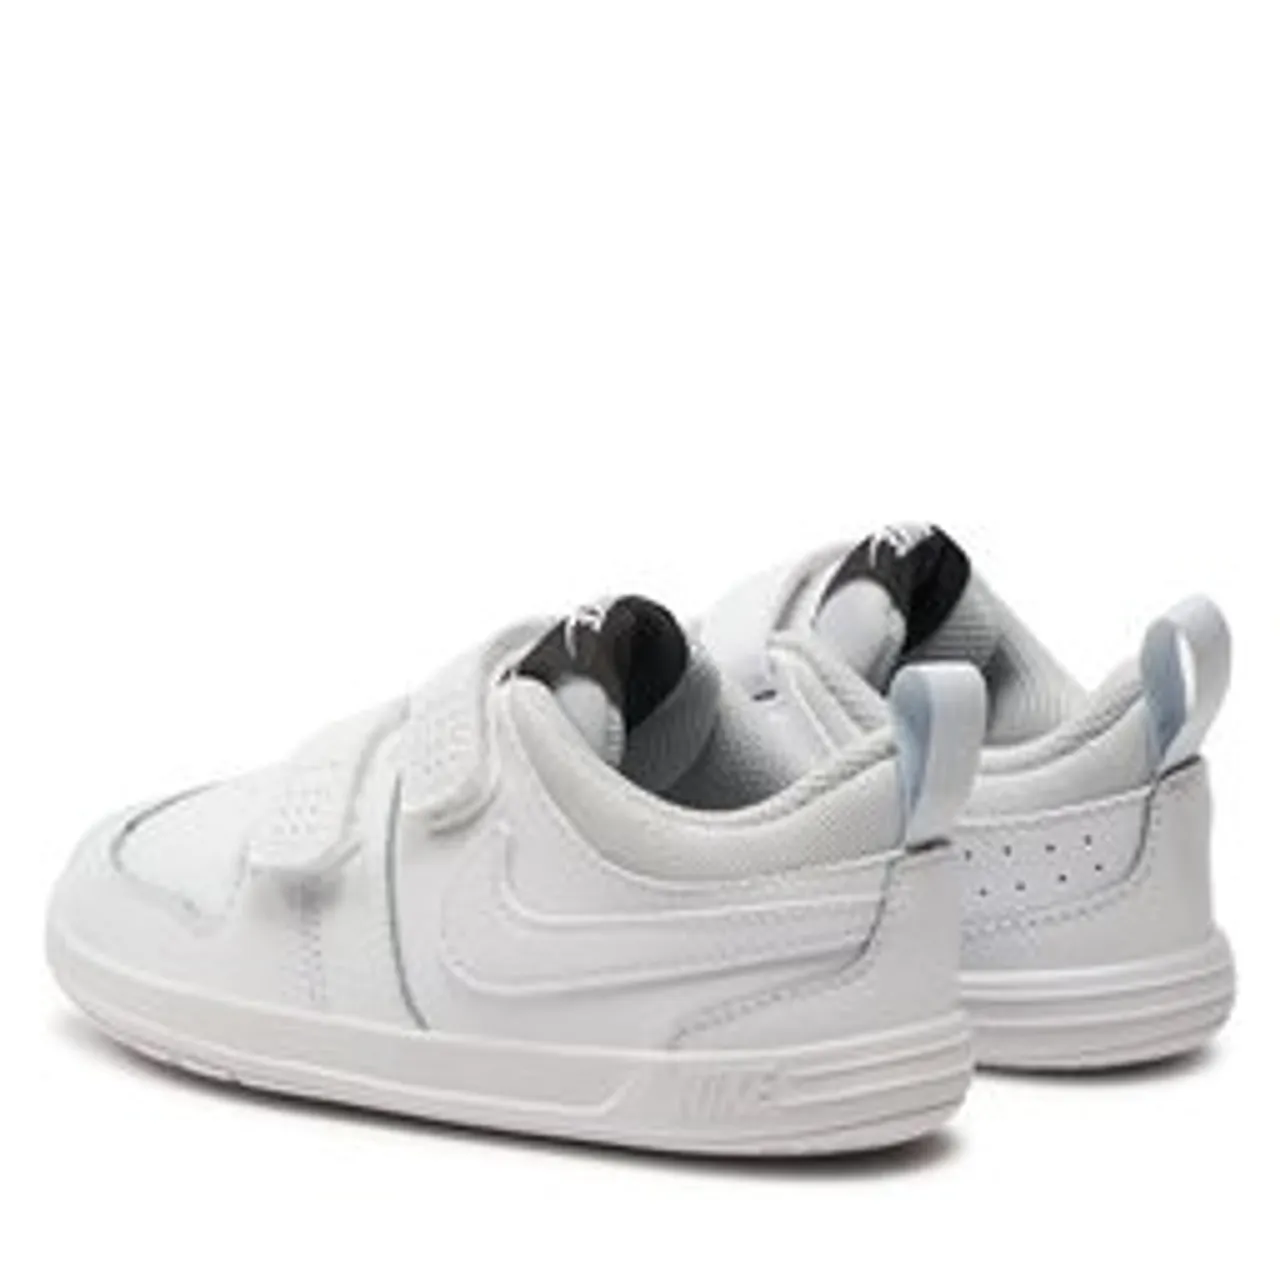 Sneakers Nike Pico 5 (TDV) AR4162 100 Weiß